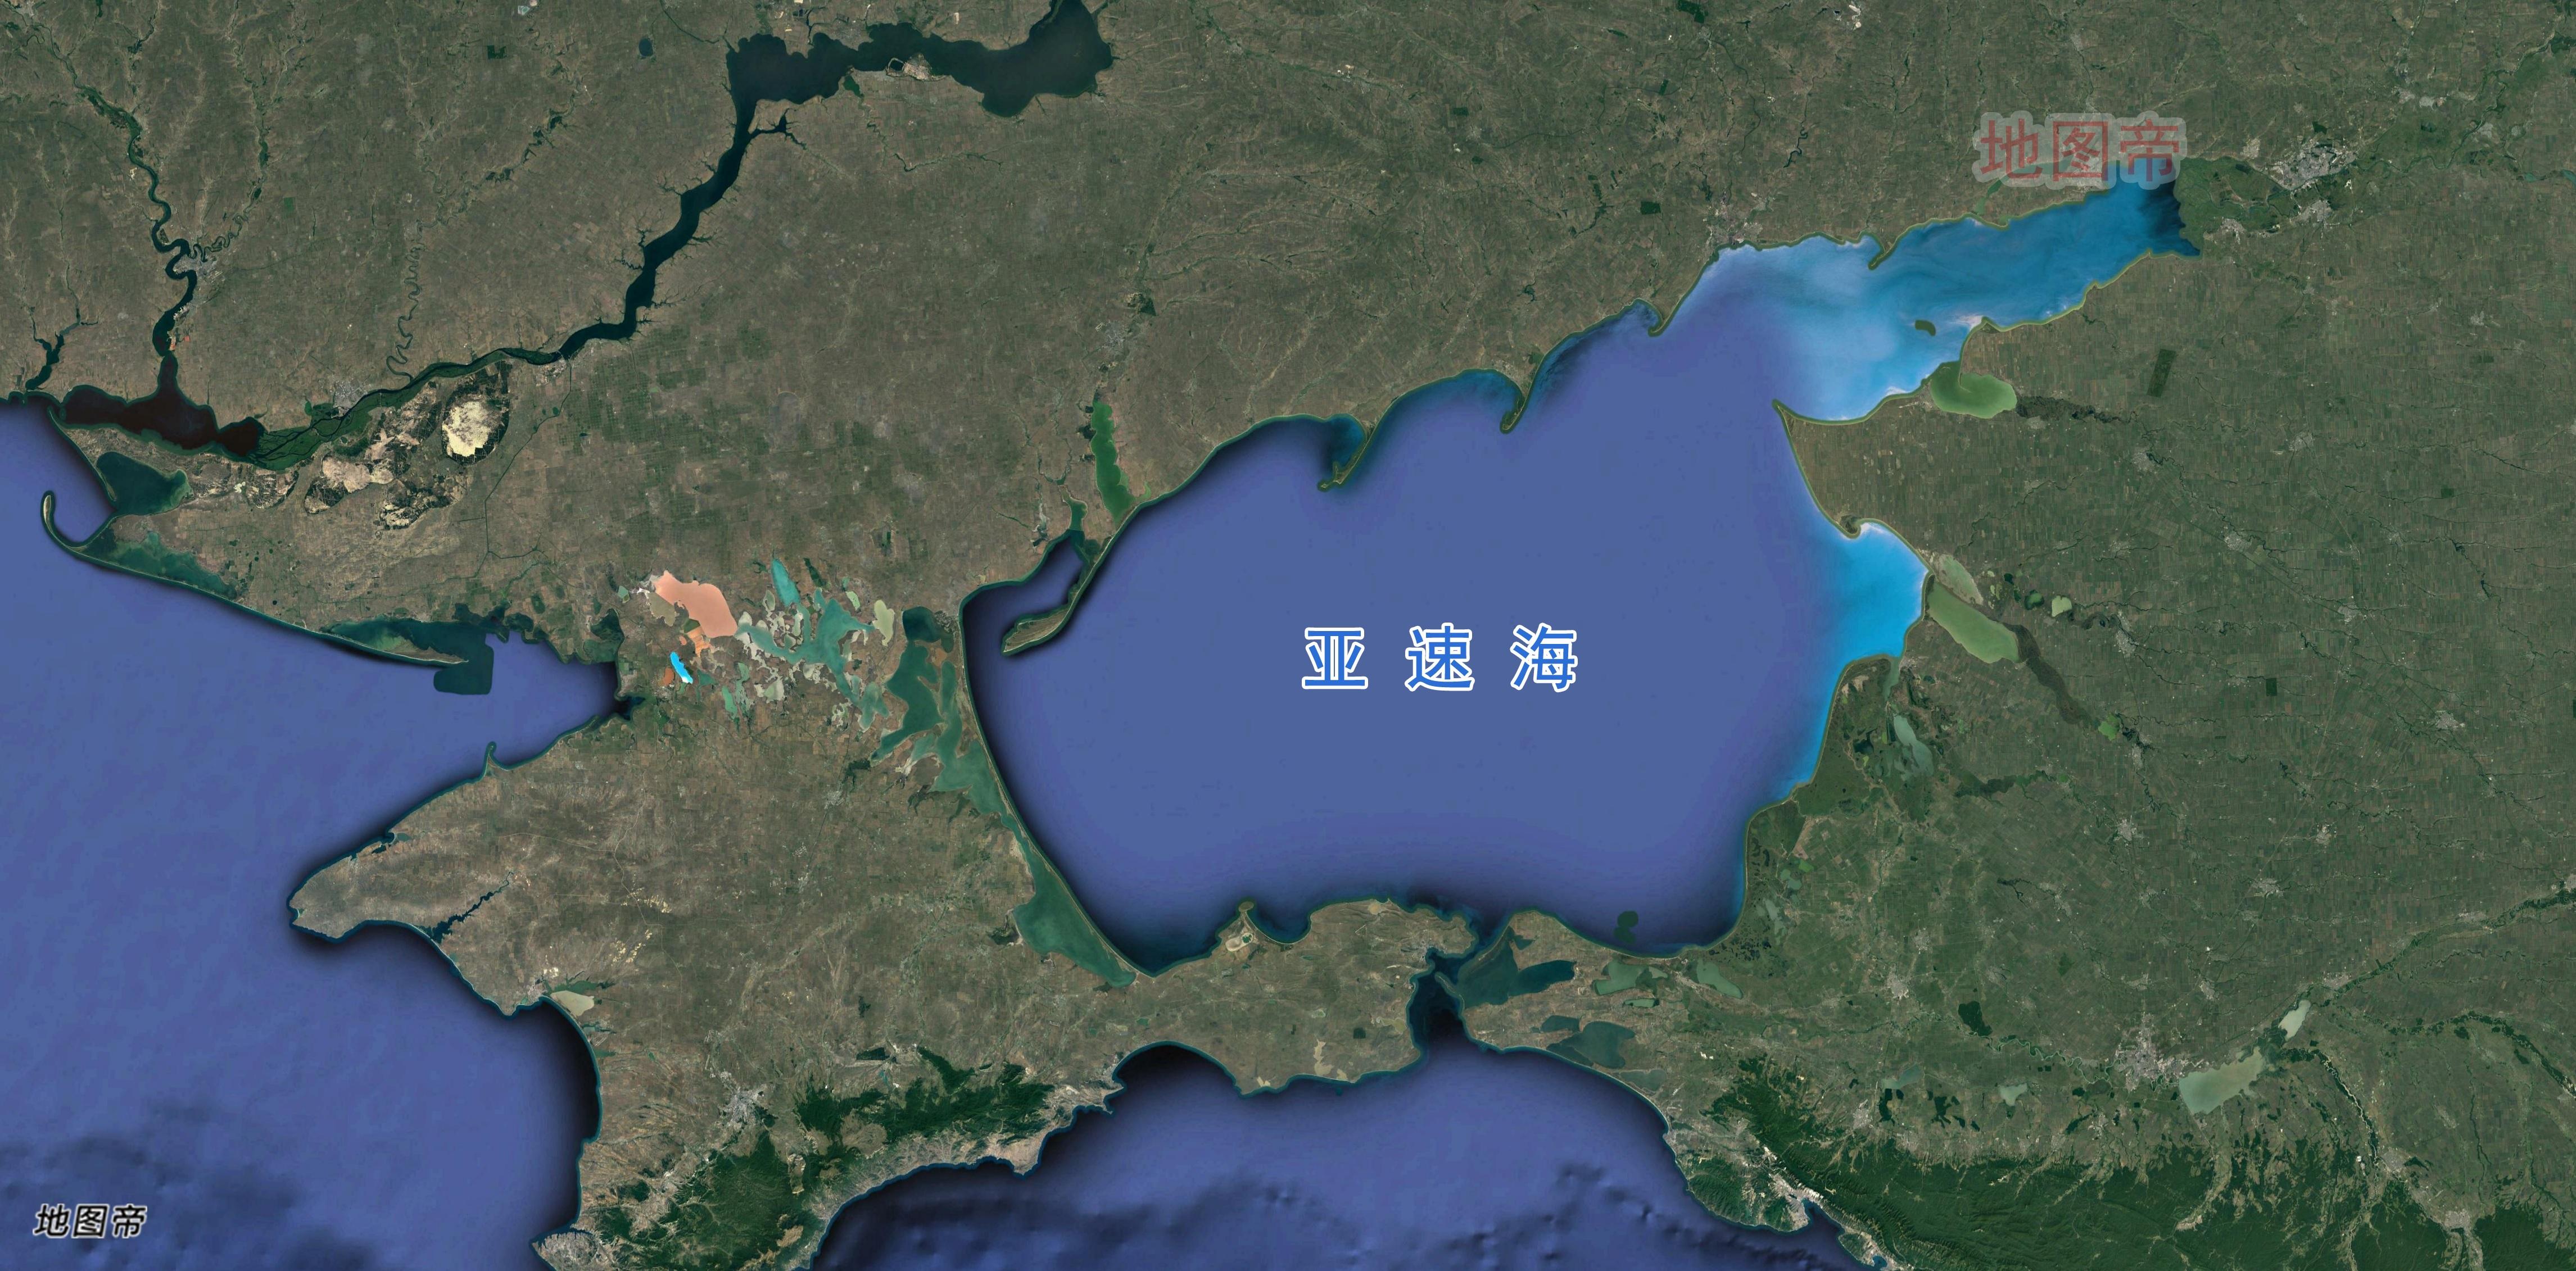 亚速海面积不算大,沙俄为何要争夺几百年?图片